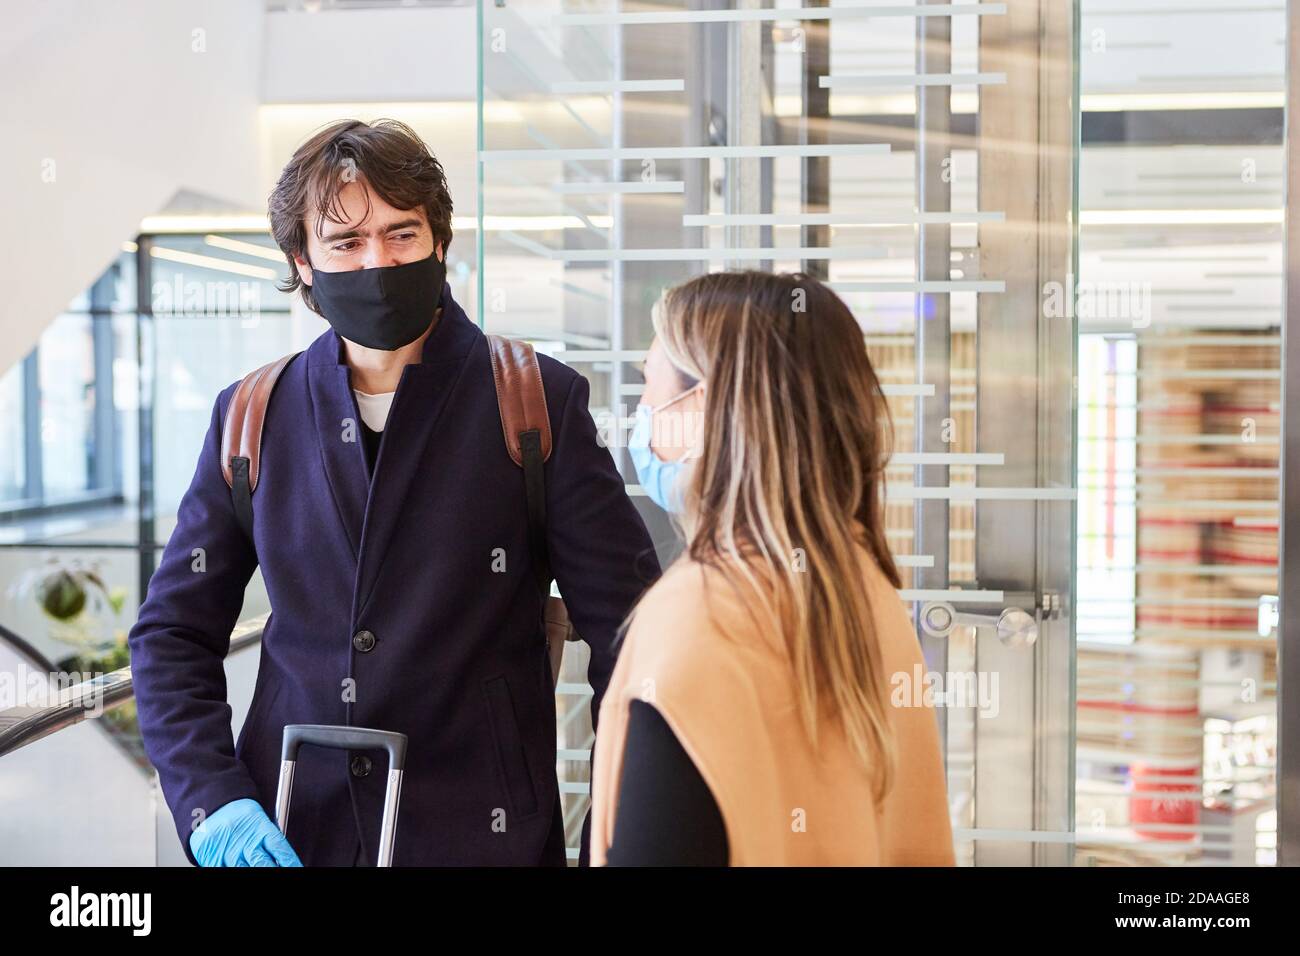 Les voyageurs d'affaires qui ont un masque facial en raison de la pandémie Covid-19 à l'aéroport Banque D'Images